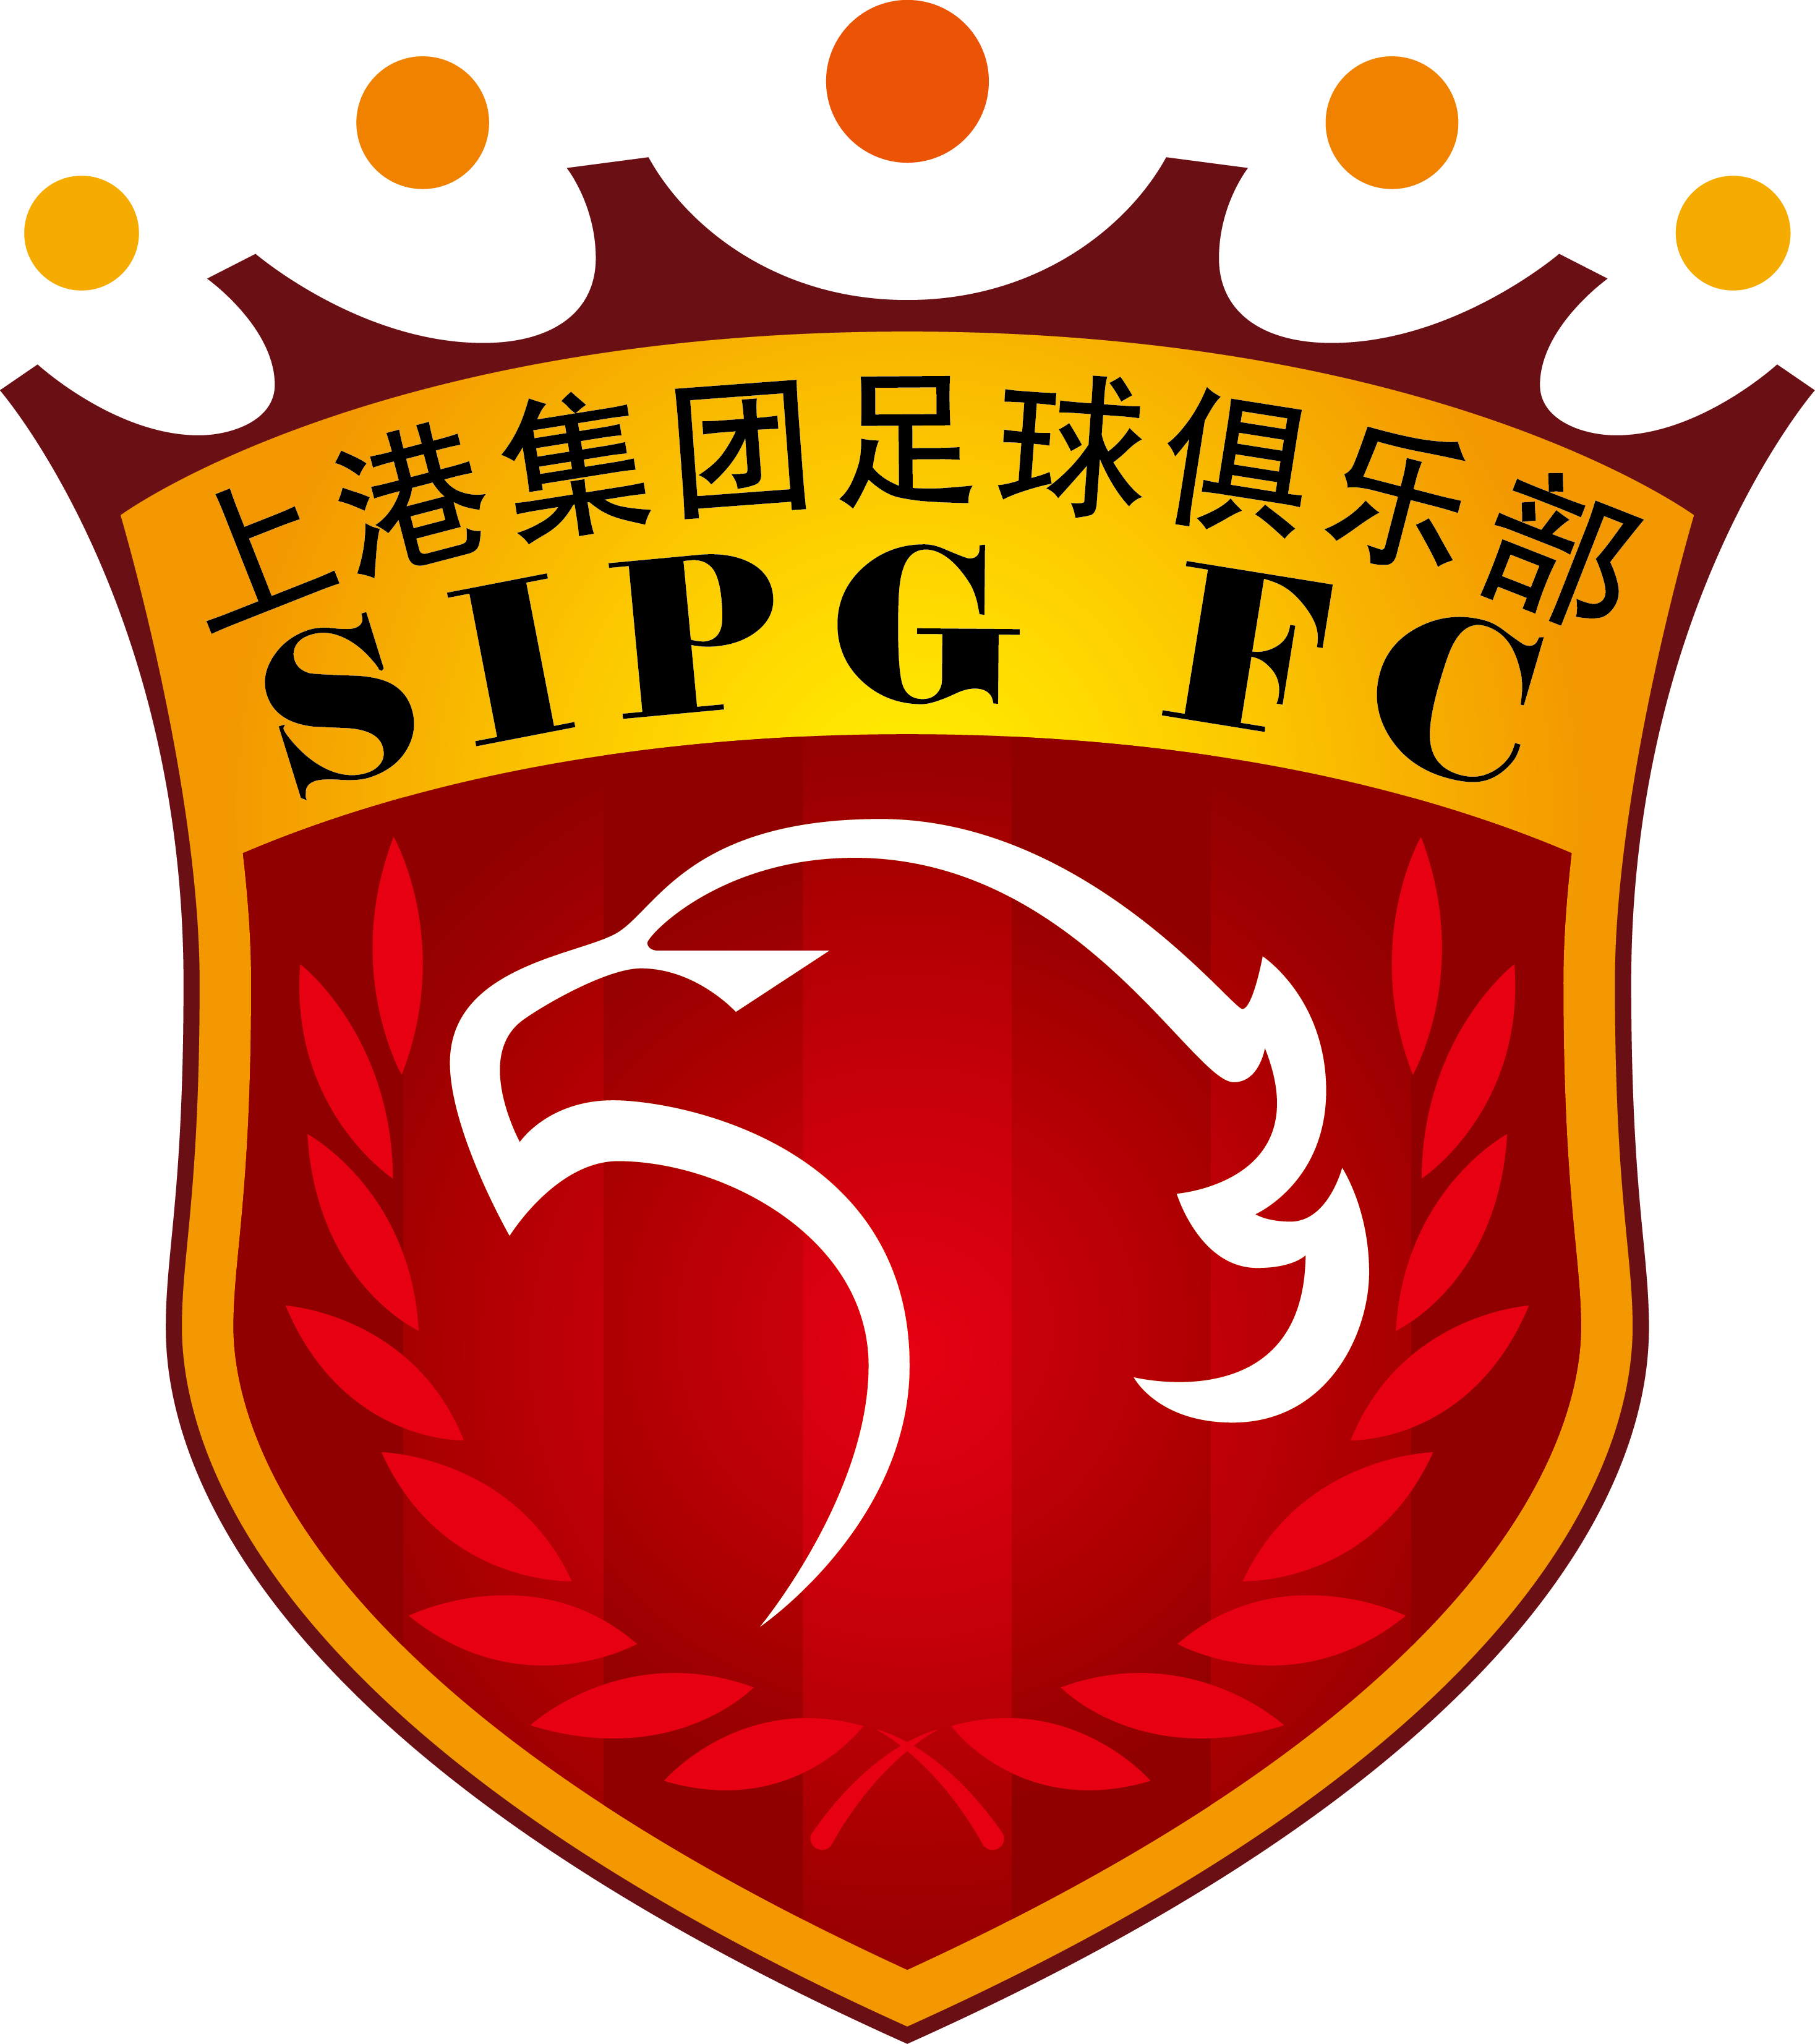 里昂足球俱乐部队徽图片